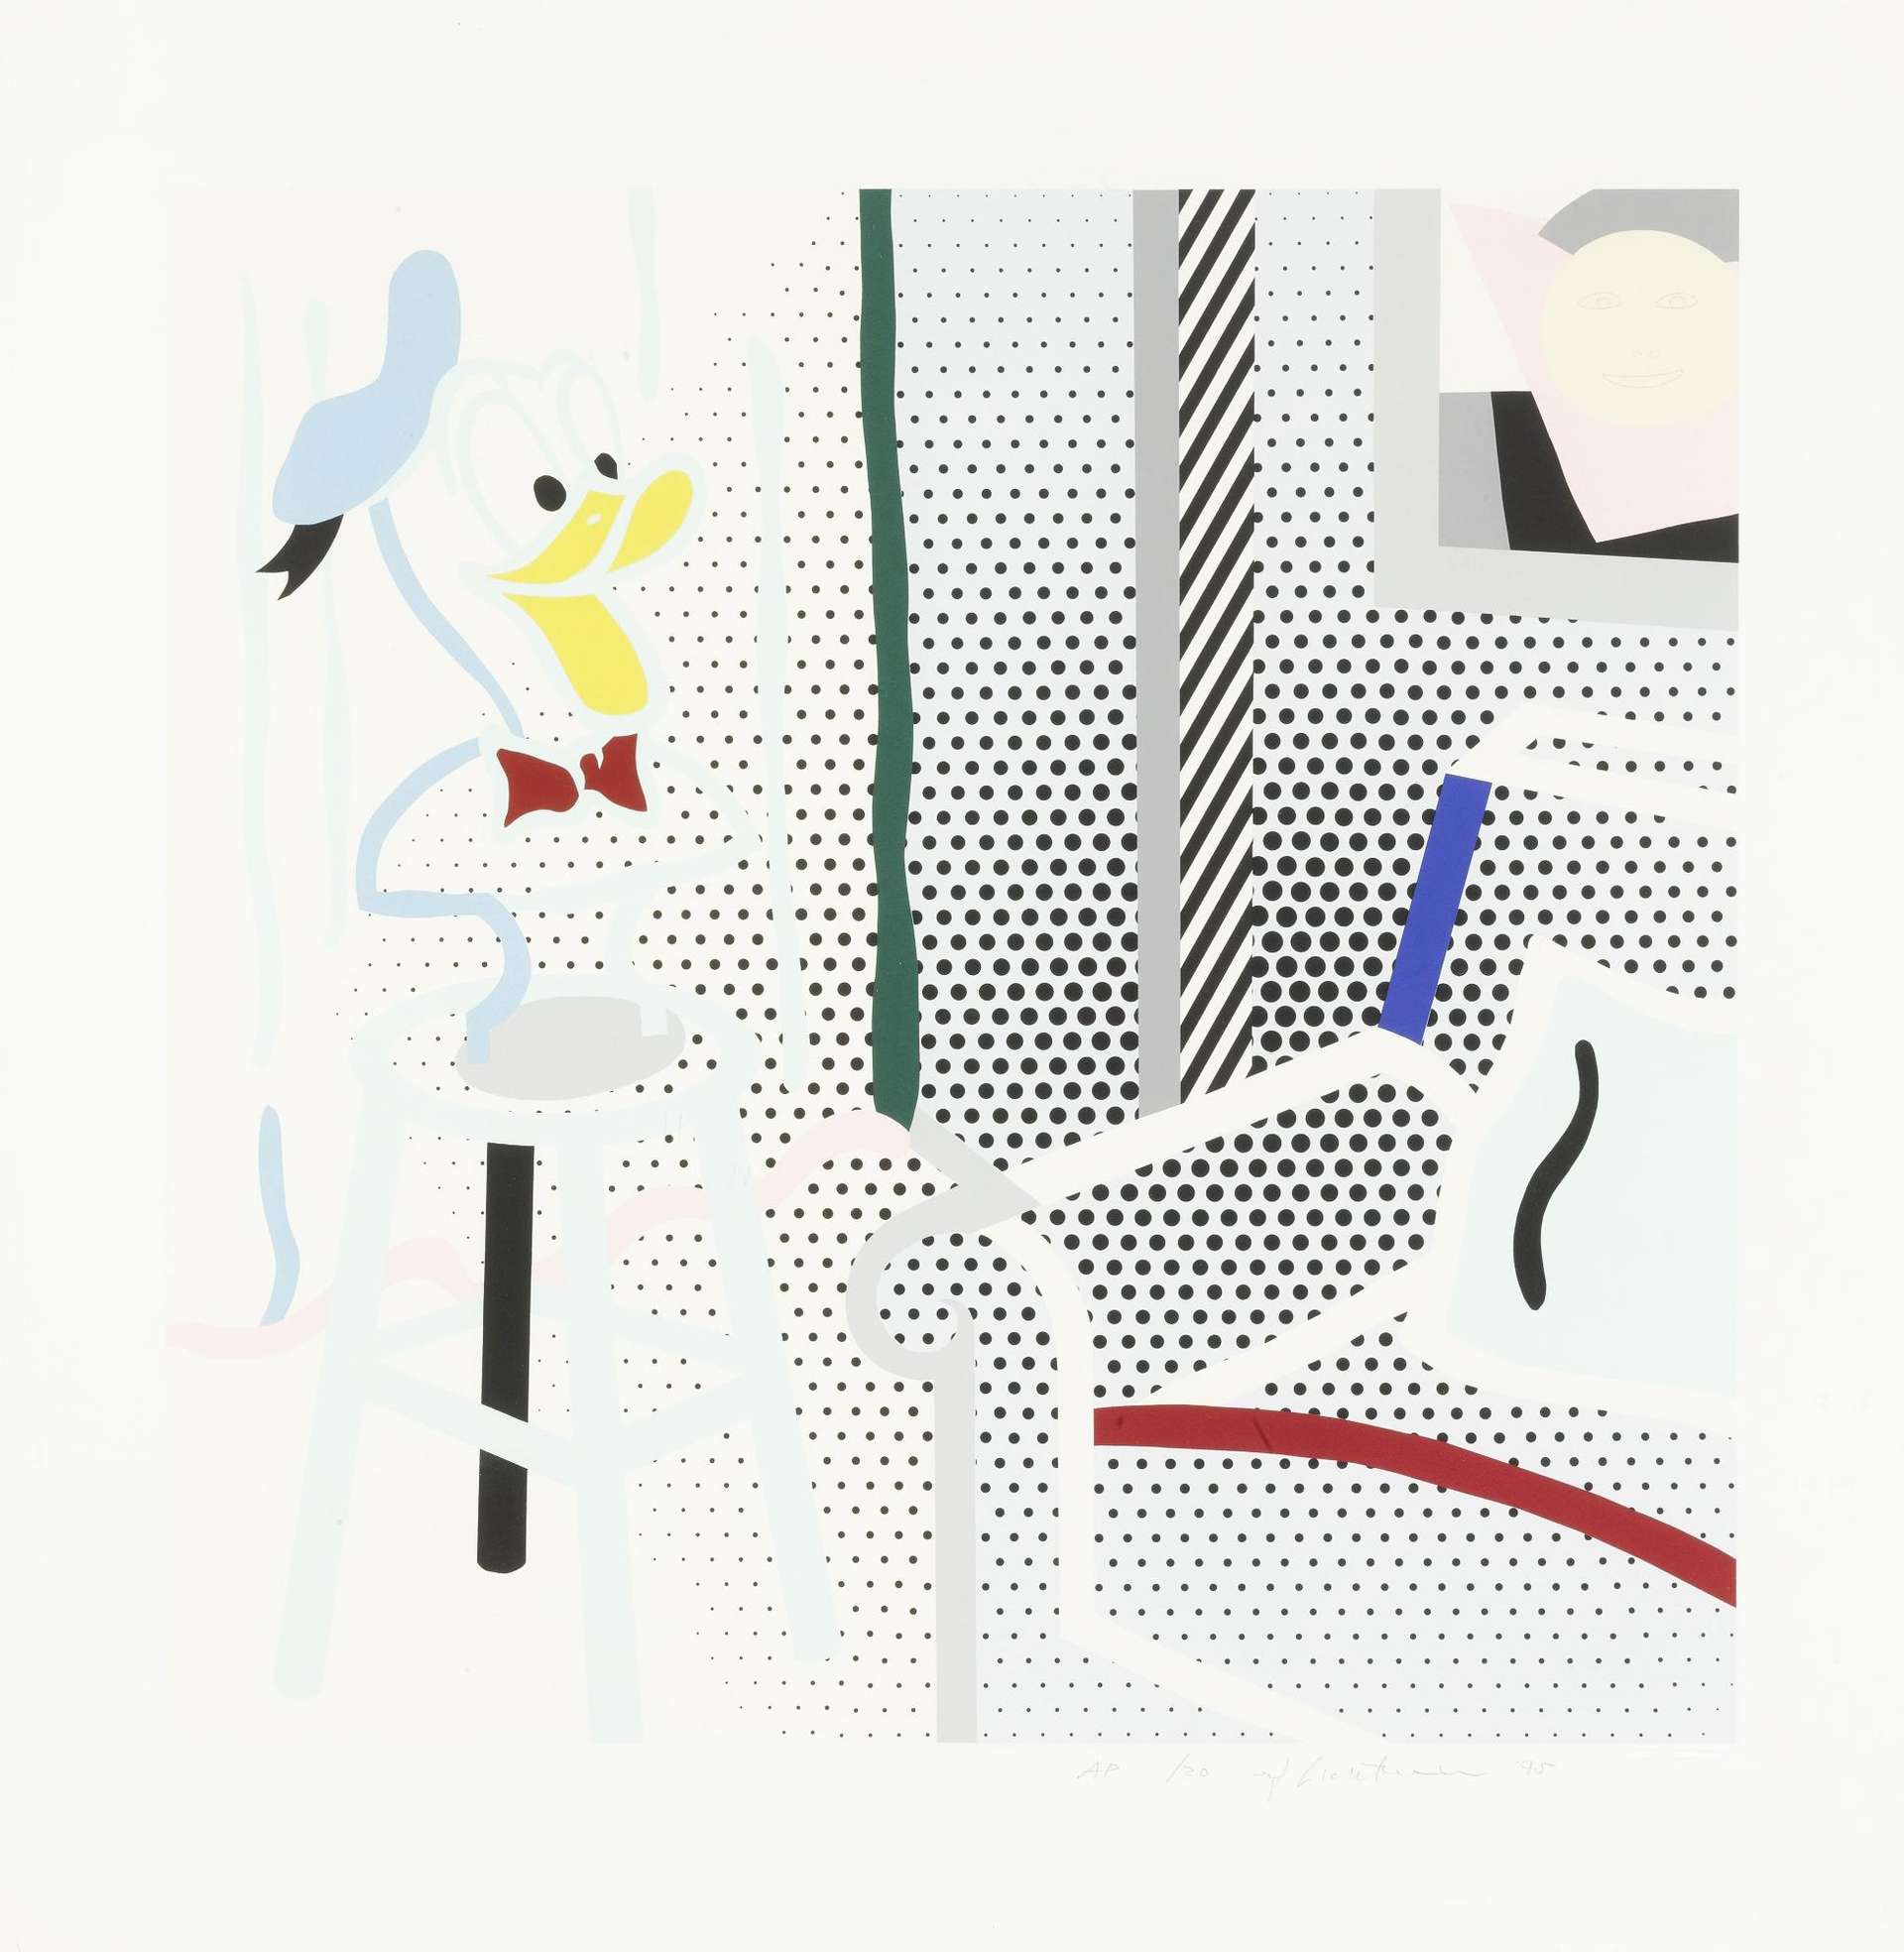 Roy Lichtenstein: Virtual Interior: Portrait Of A Duck - Signed Print